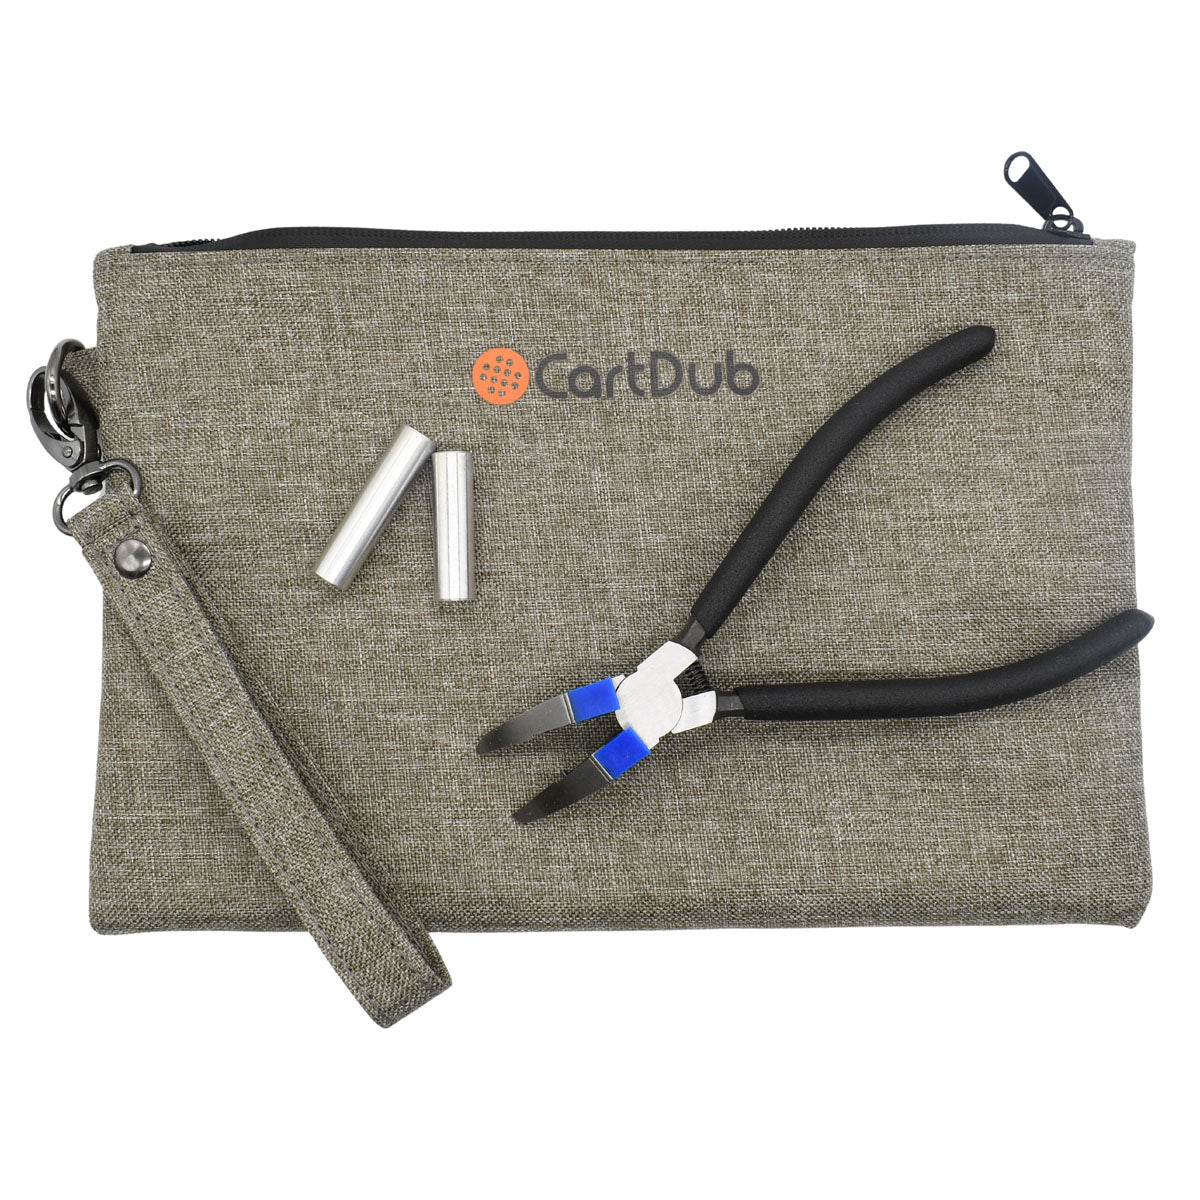 CartDub Accessories Kit